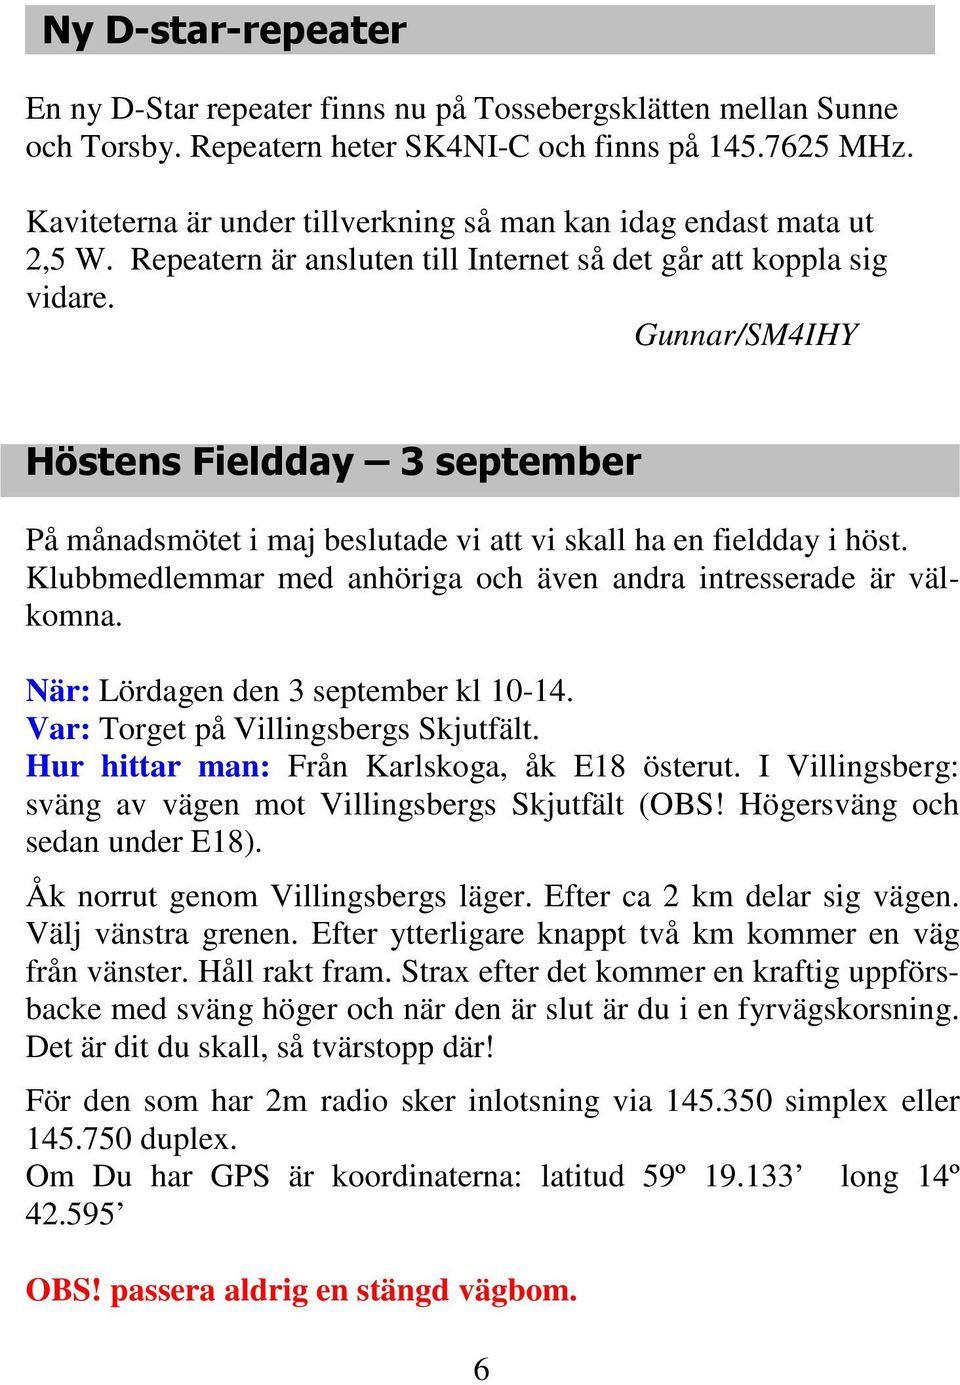 Gunnar/SM4IHY Höstens Fieldday 3 september På månadsmötet i maj beslutade vi att vi skall ha en fieldday i höst. Klubbmedlemmar med anhöriga och även andra intresserade är välkomna.